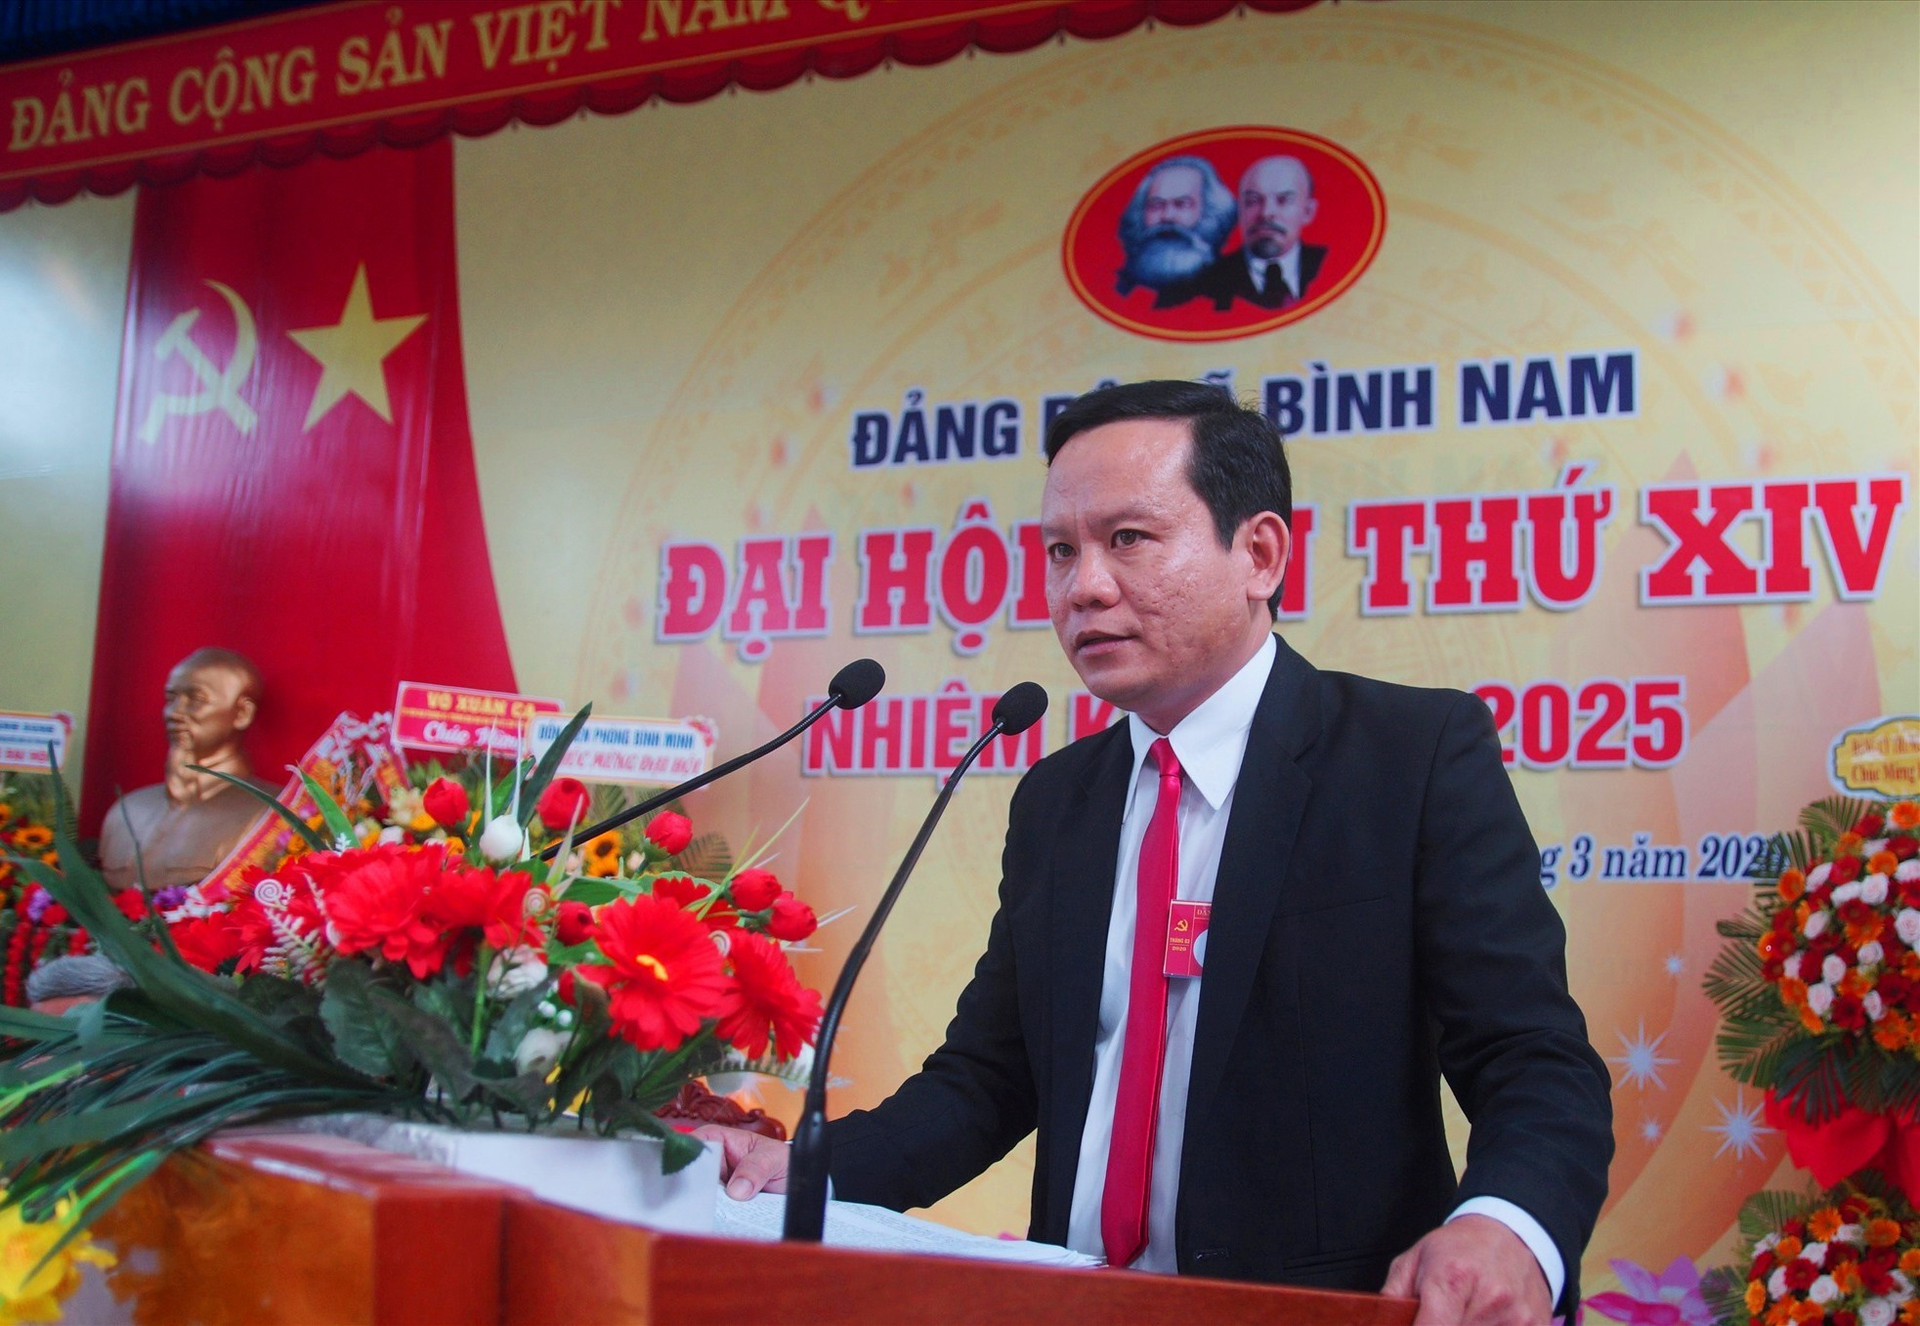 Ông Nguyễn Thanh Hoàng - Bí thư Đảng ủy xã Bình Nam (khóa XIII) phát biểu tại đại hội. Ảnh: PHAN VINH